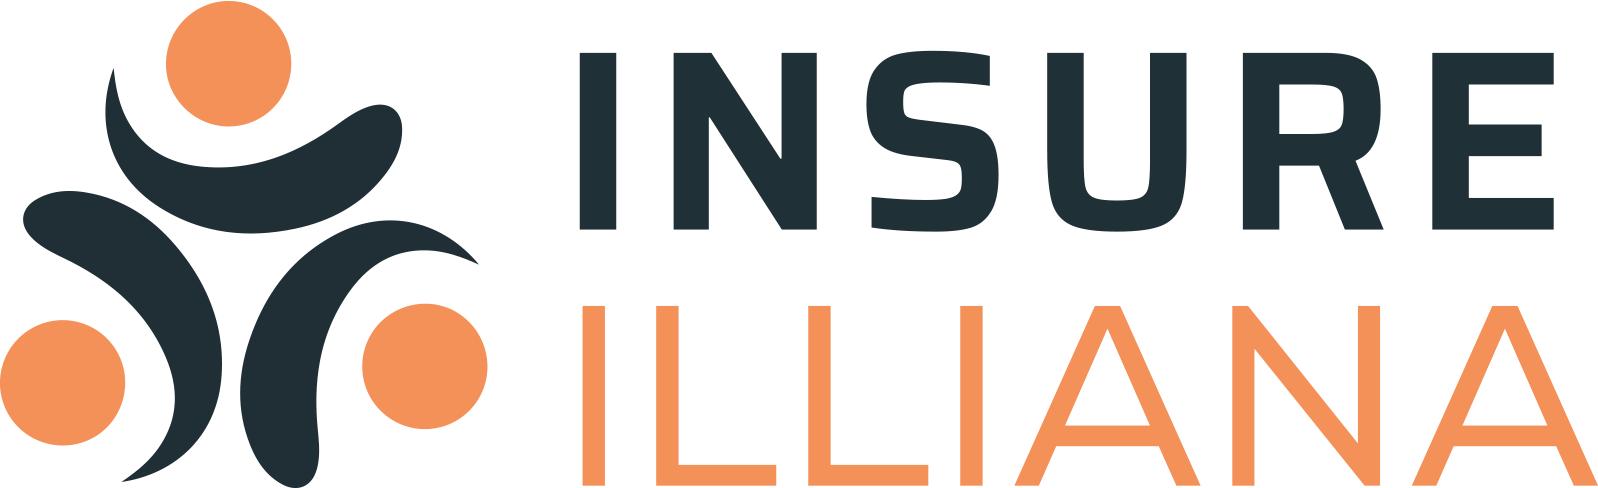 Insure-Illiana-logo